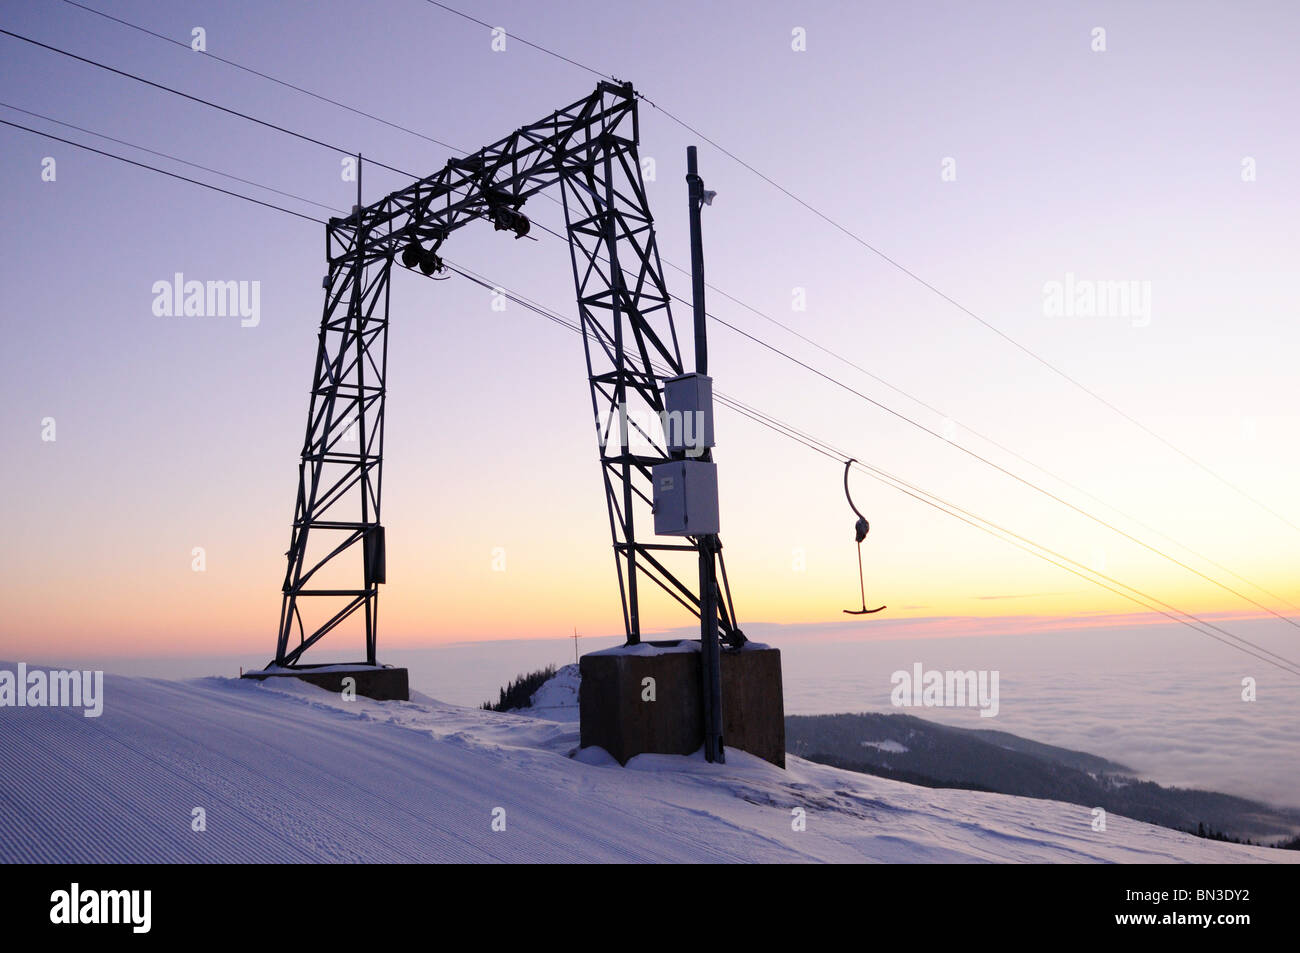 Ski lift, Styria, Austria, low angle view Stock Photo